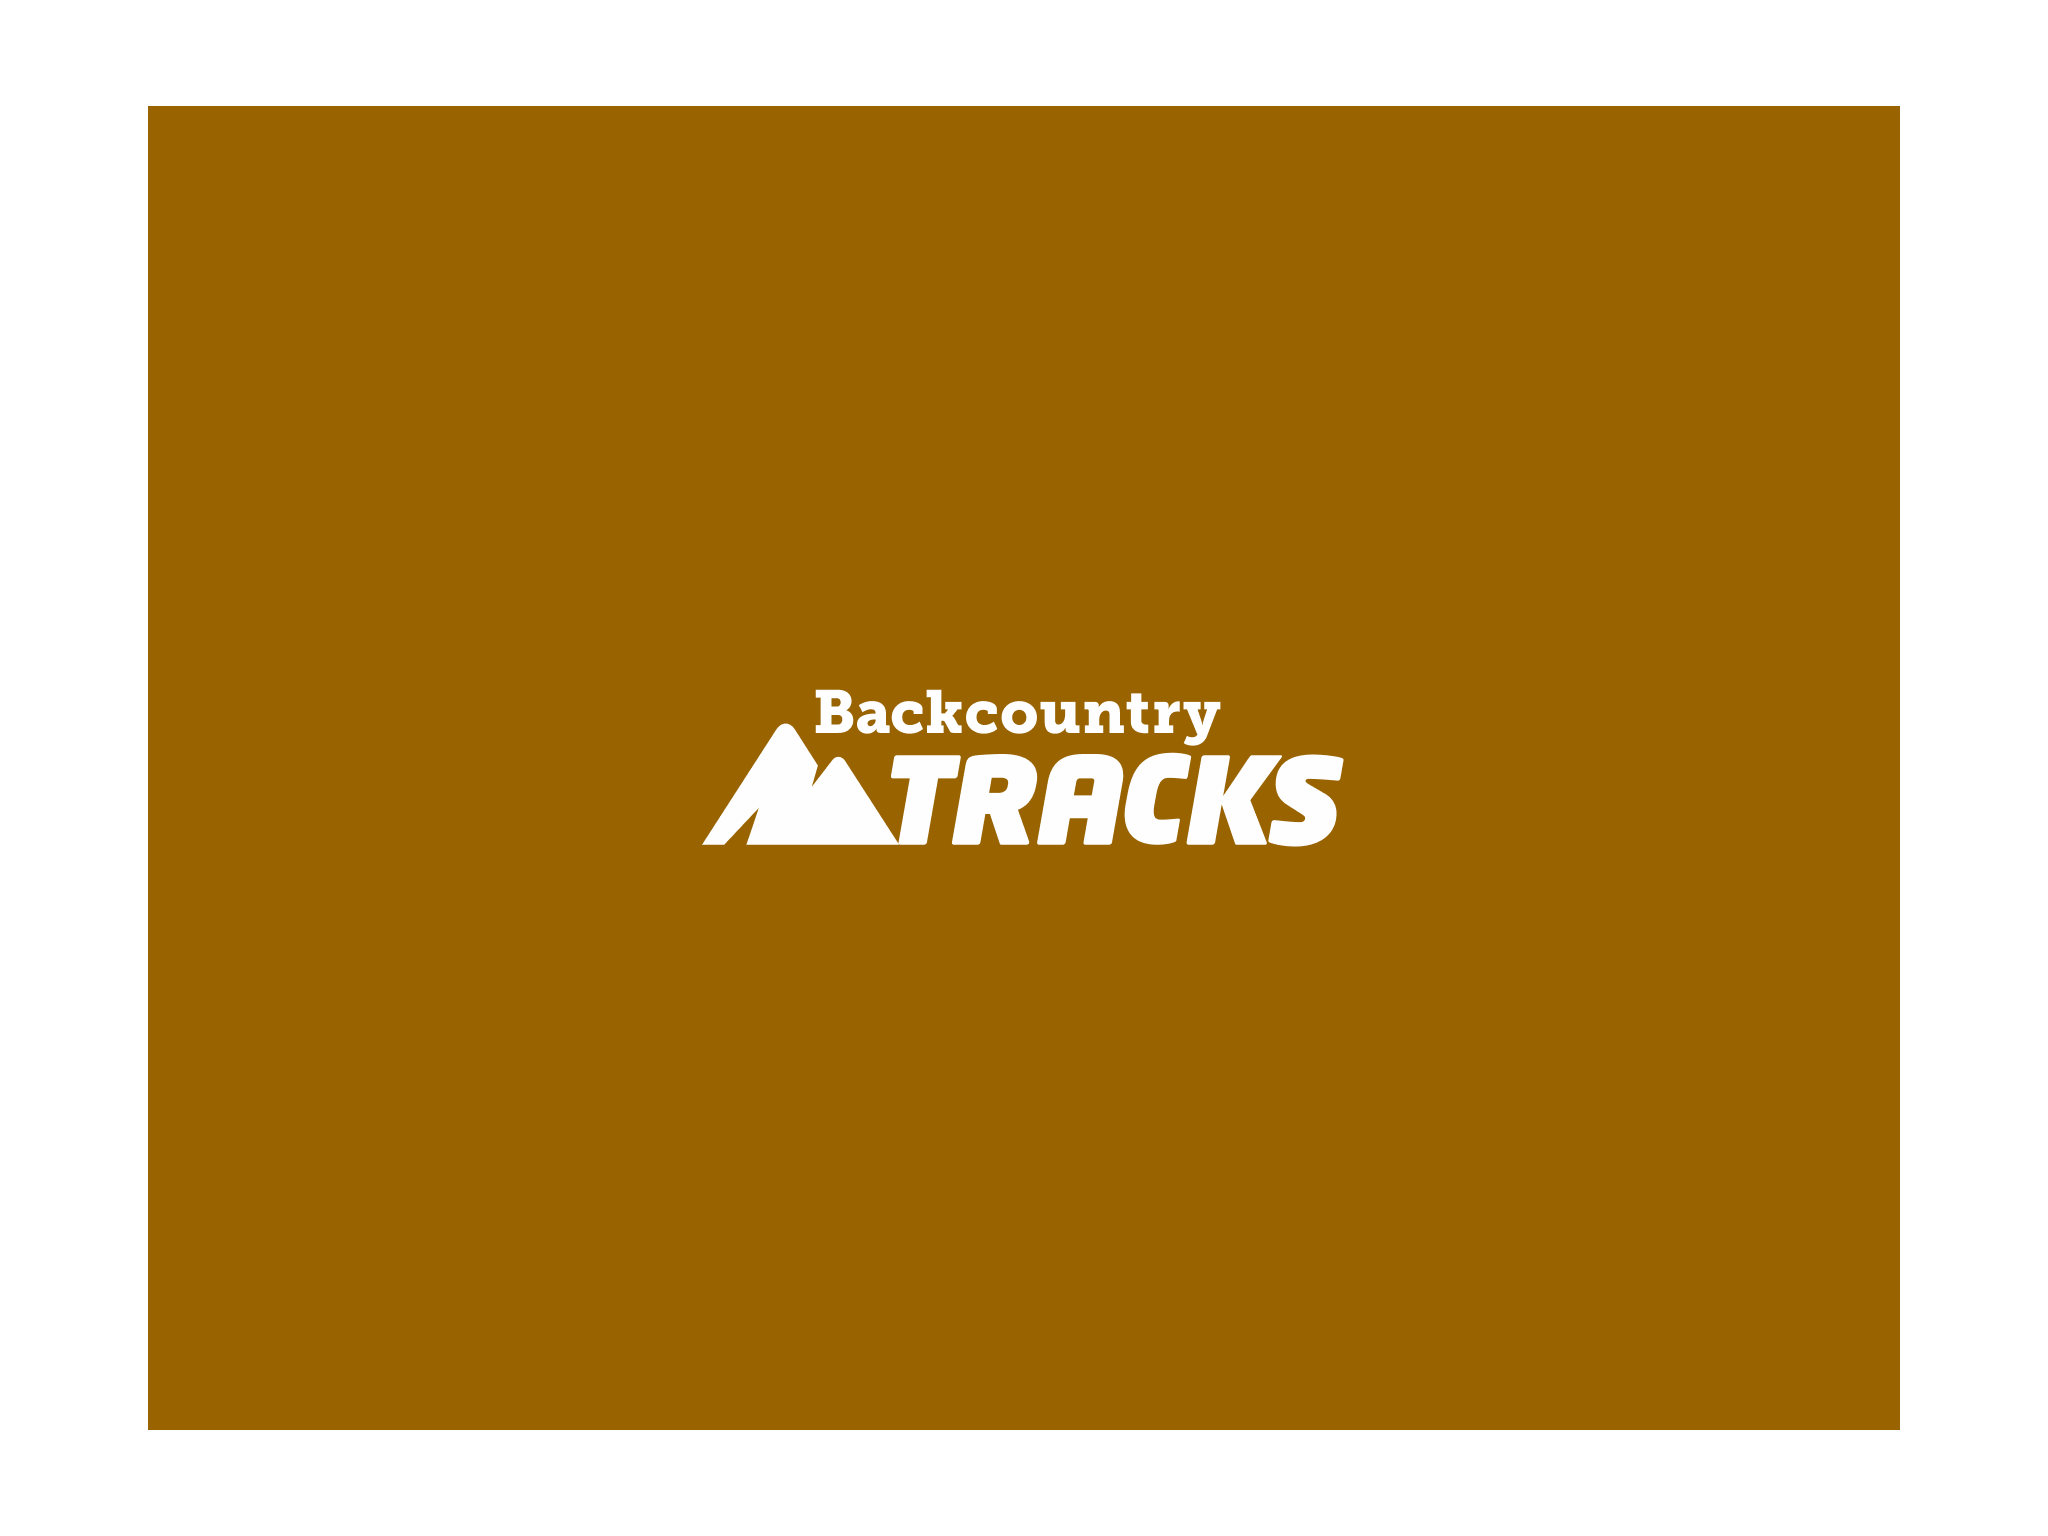 Backcountry Tracks logo design